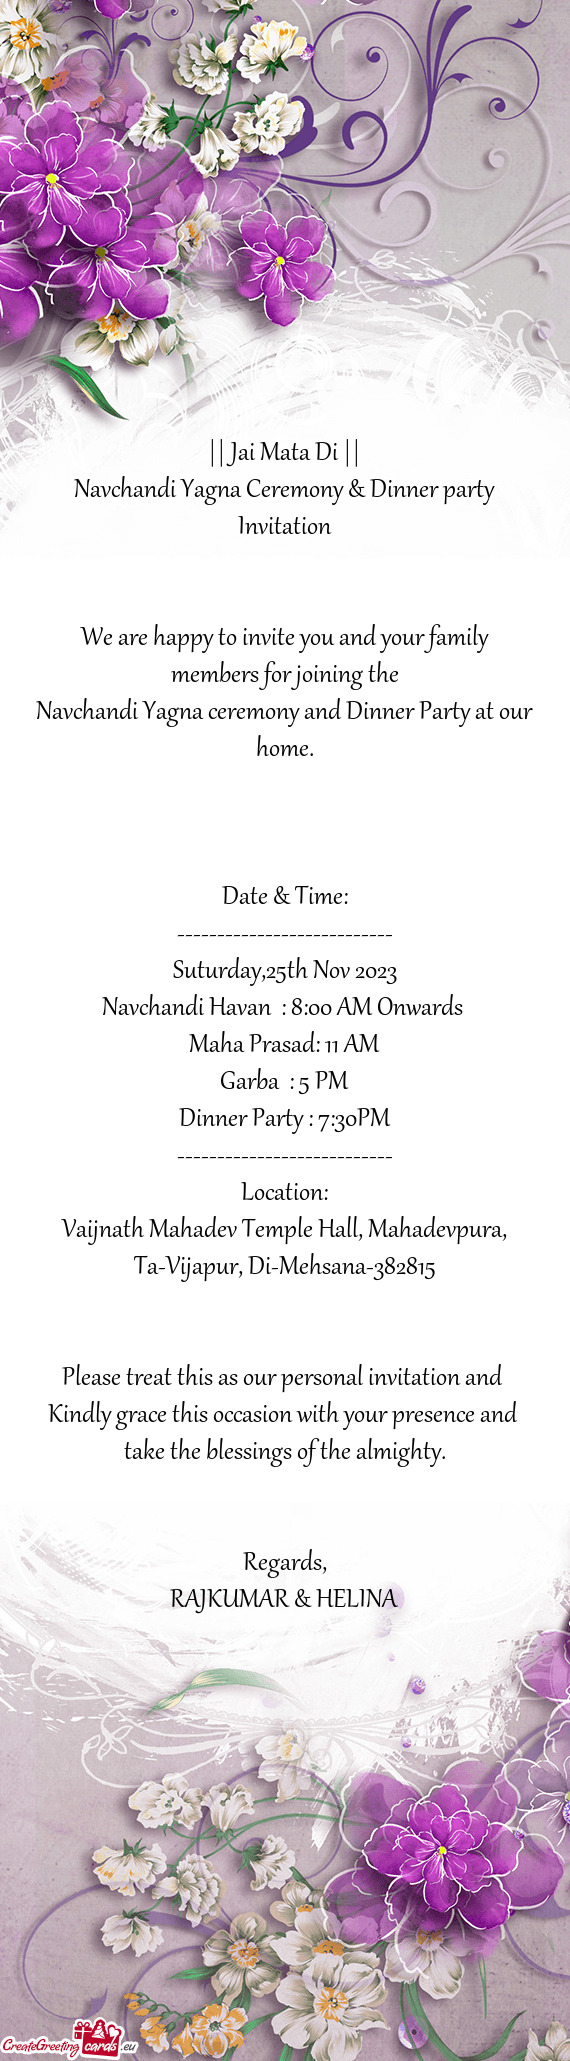 Navchandi Yagna Ceremony & Dinner party Invitation